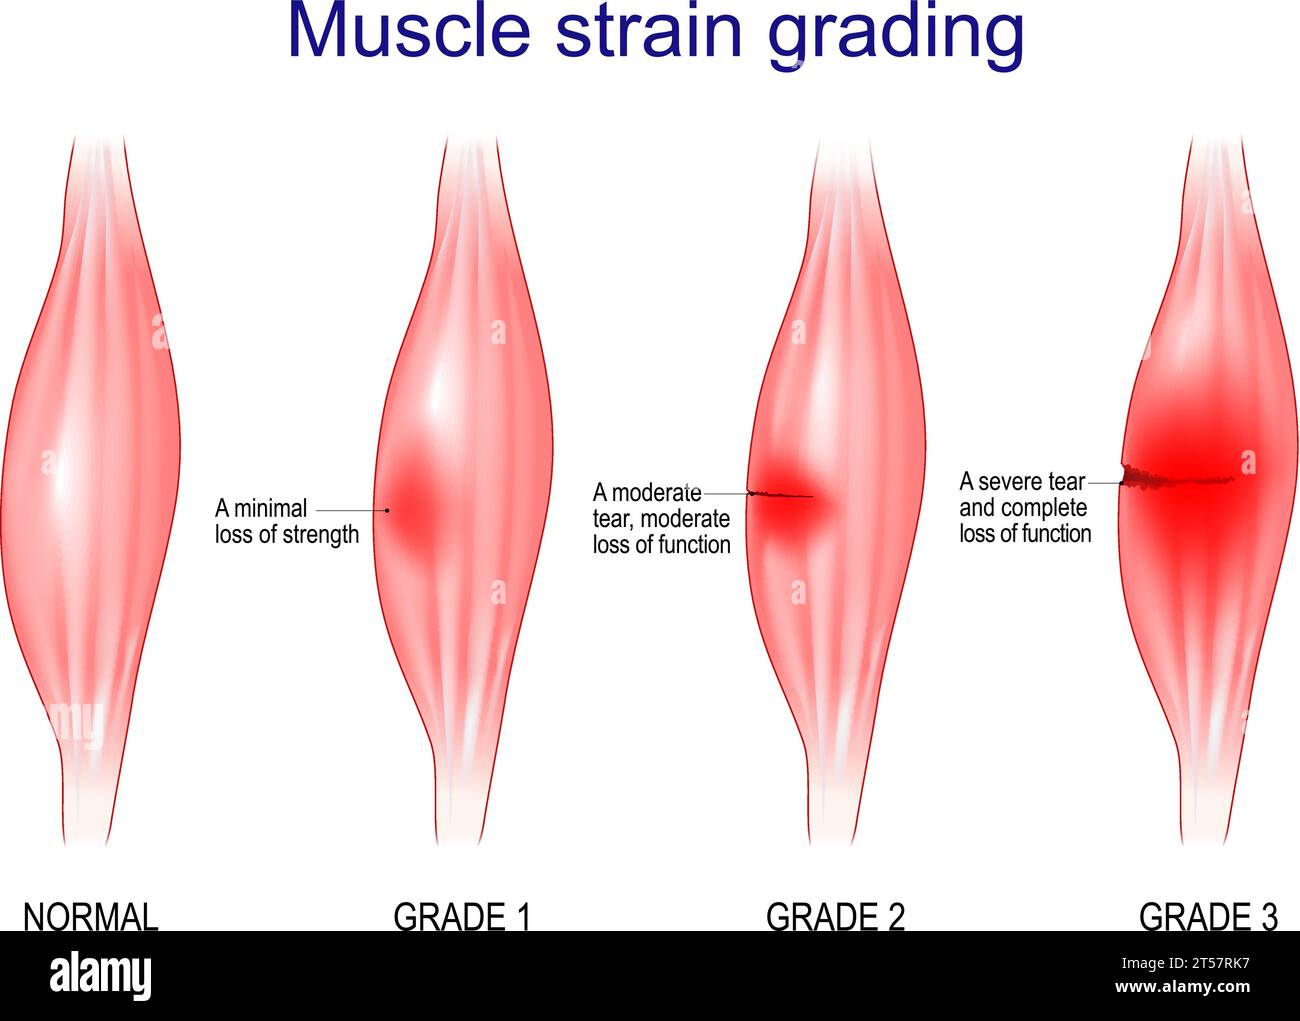 Muskel-Strain-Grading. Grad 1 ist Ein minimaler Kraftverlust. Grad 3 ist ein schwerer Riss und vollständiger Funktionsverlust. Vektorabbildung Stock Vektor